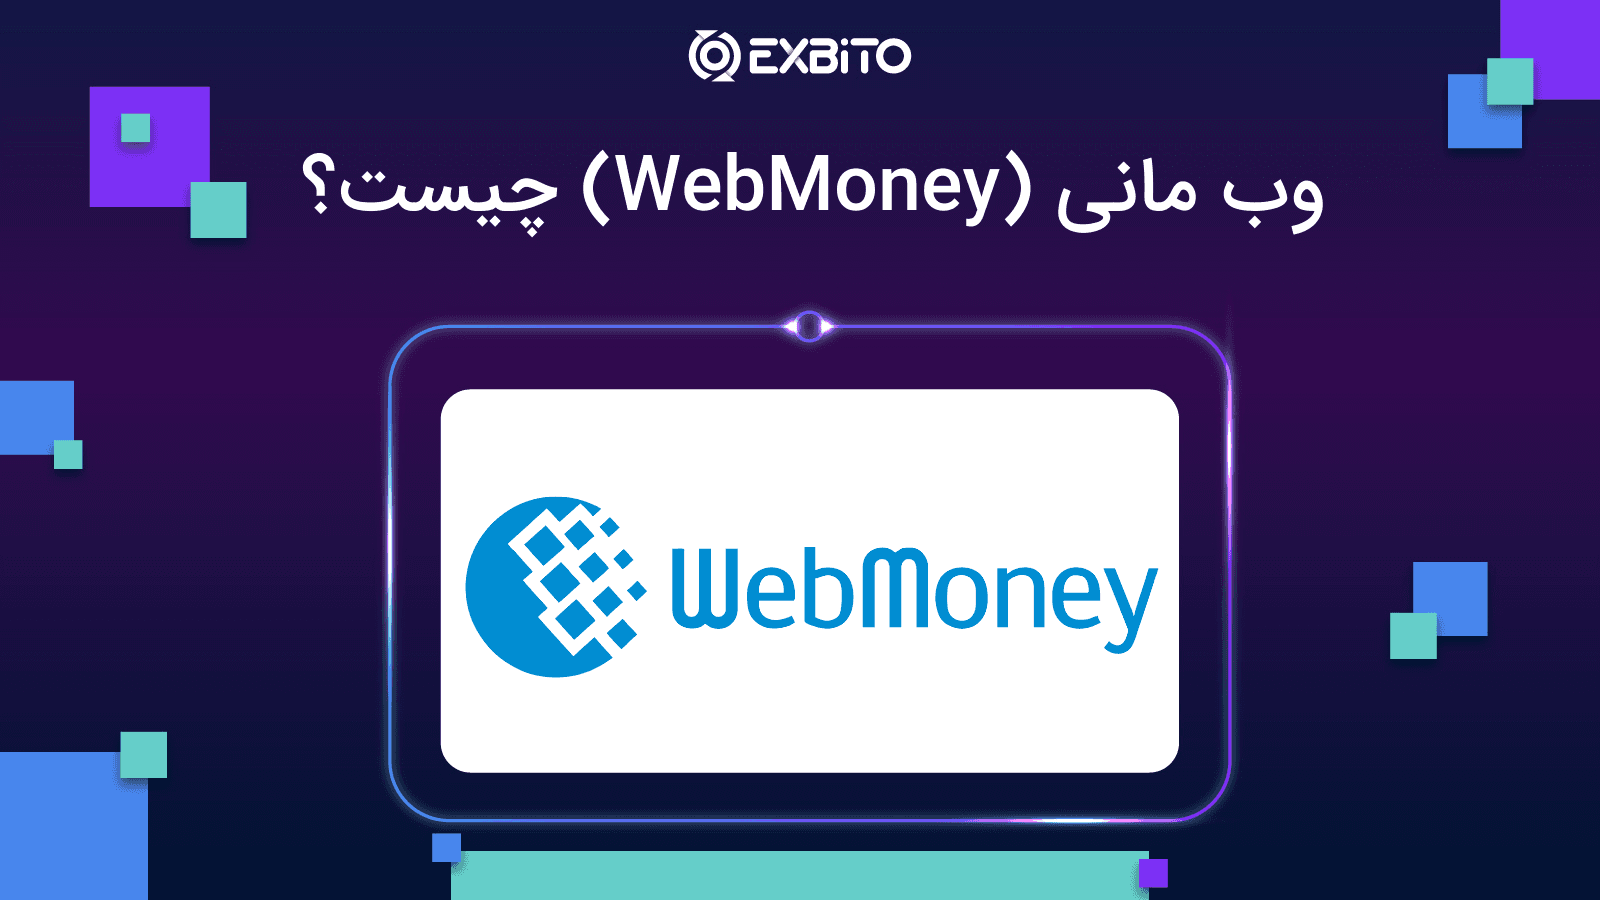 وب مانی (WebMoney) چیست؟